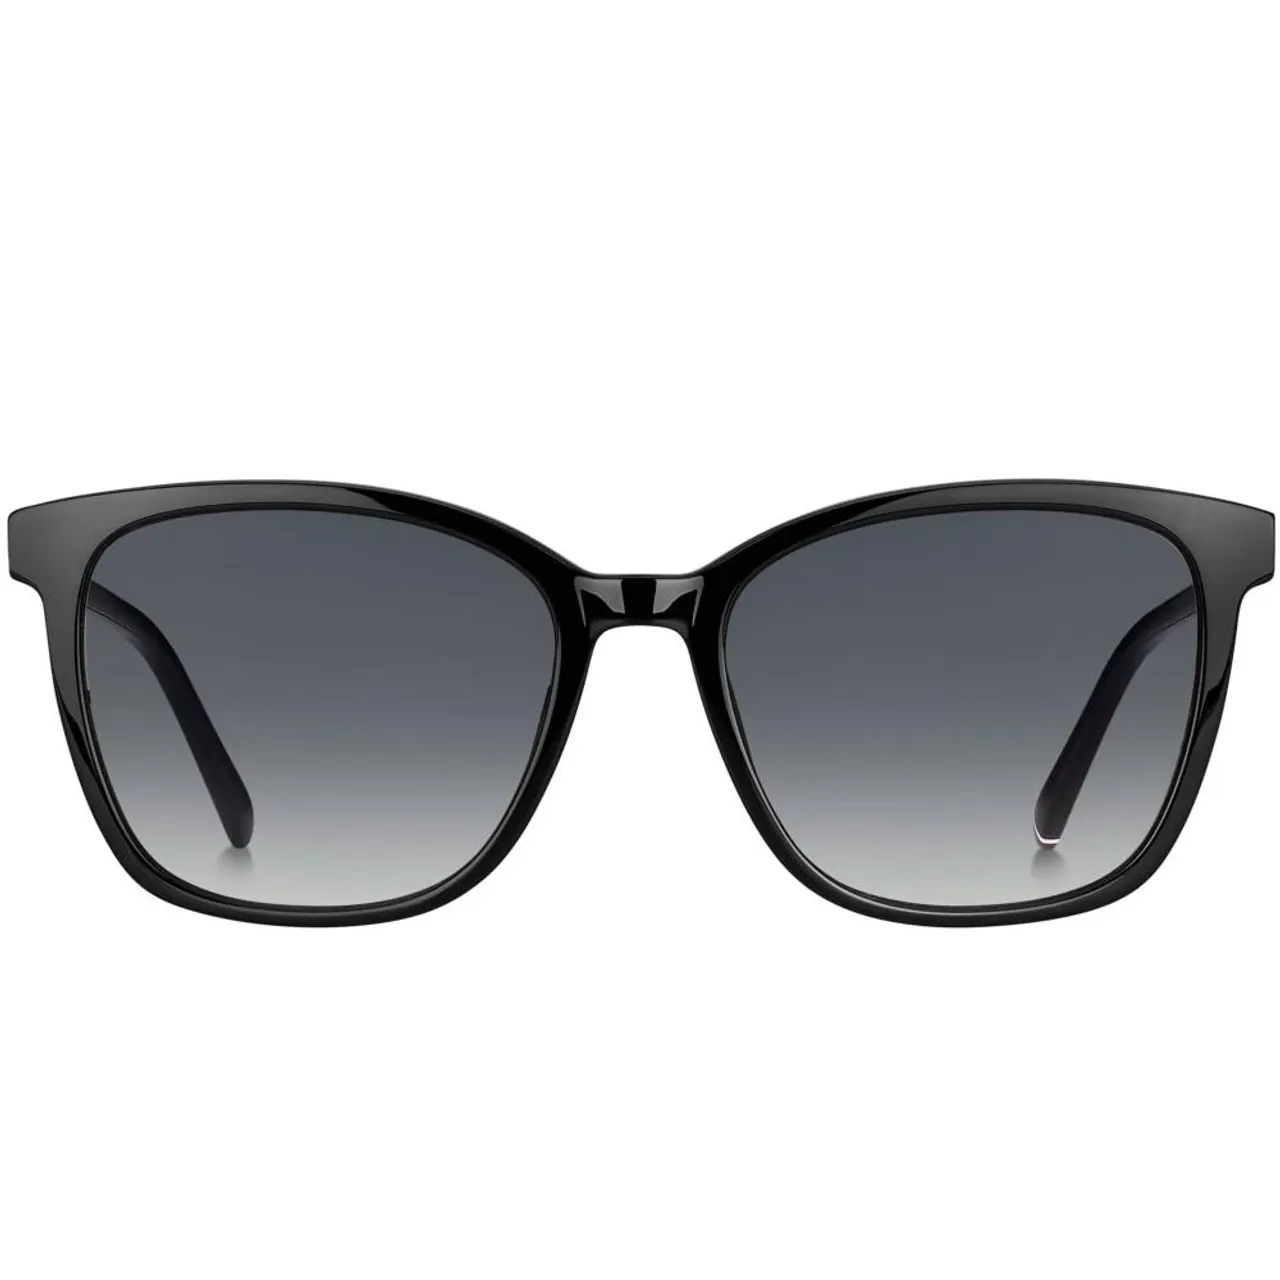 Schwarze/Graue Sonnenbrille TH 1723/S Tommy Hilfiger